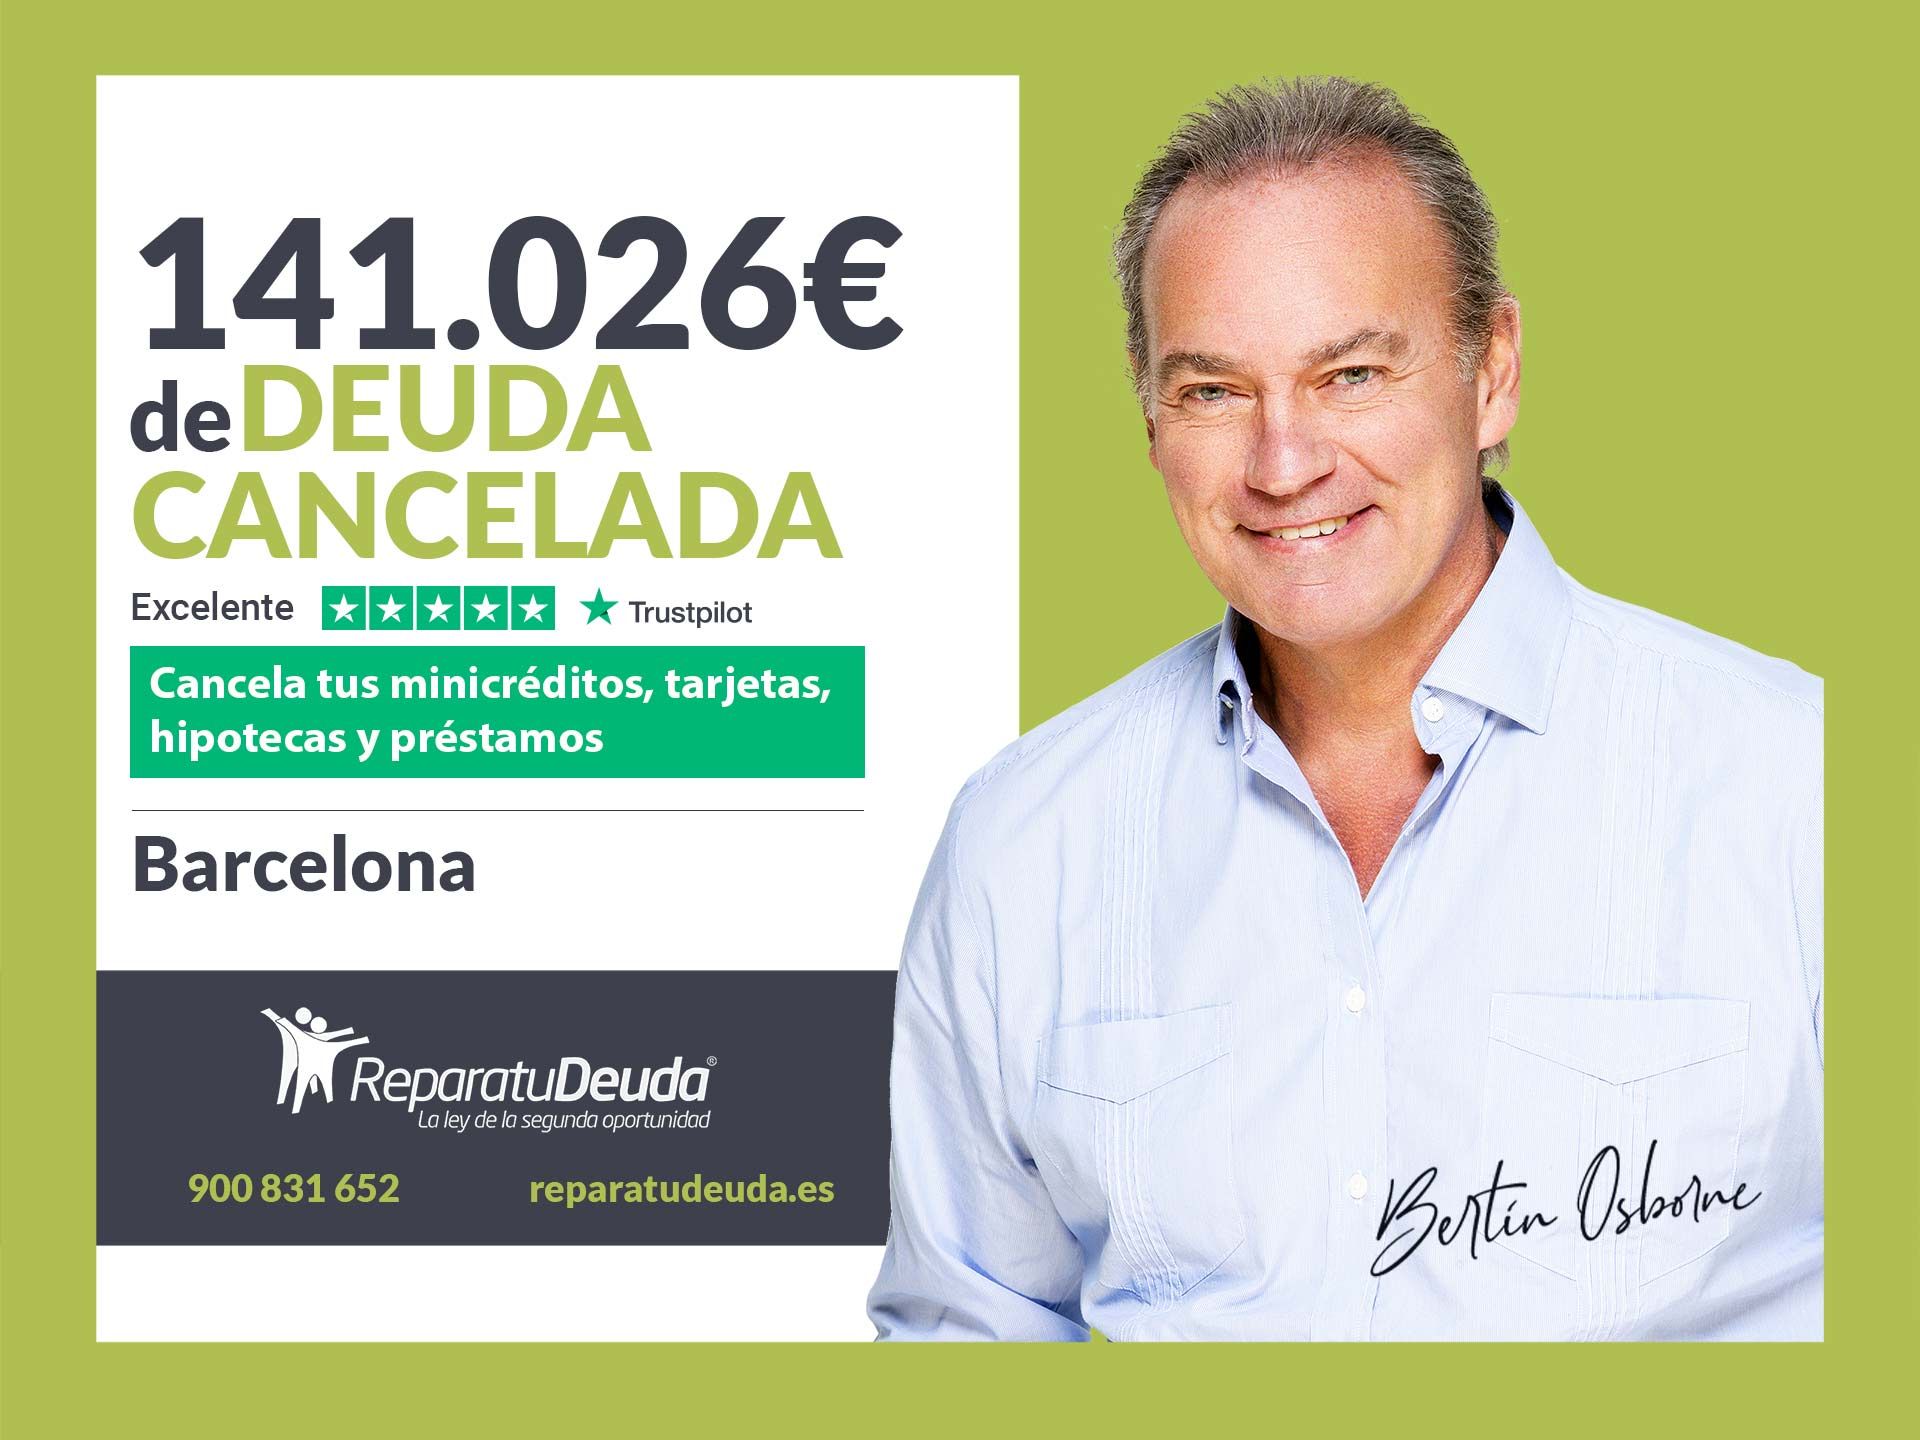 Repara tu Deuda Abogados cancela 141.026? en Barcelona (Catalunya) con la Ley de Segunda Oportunidad